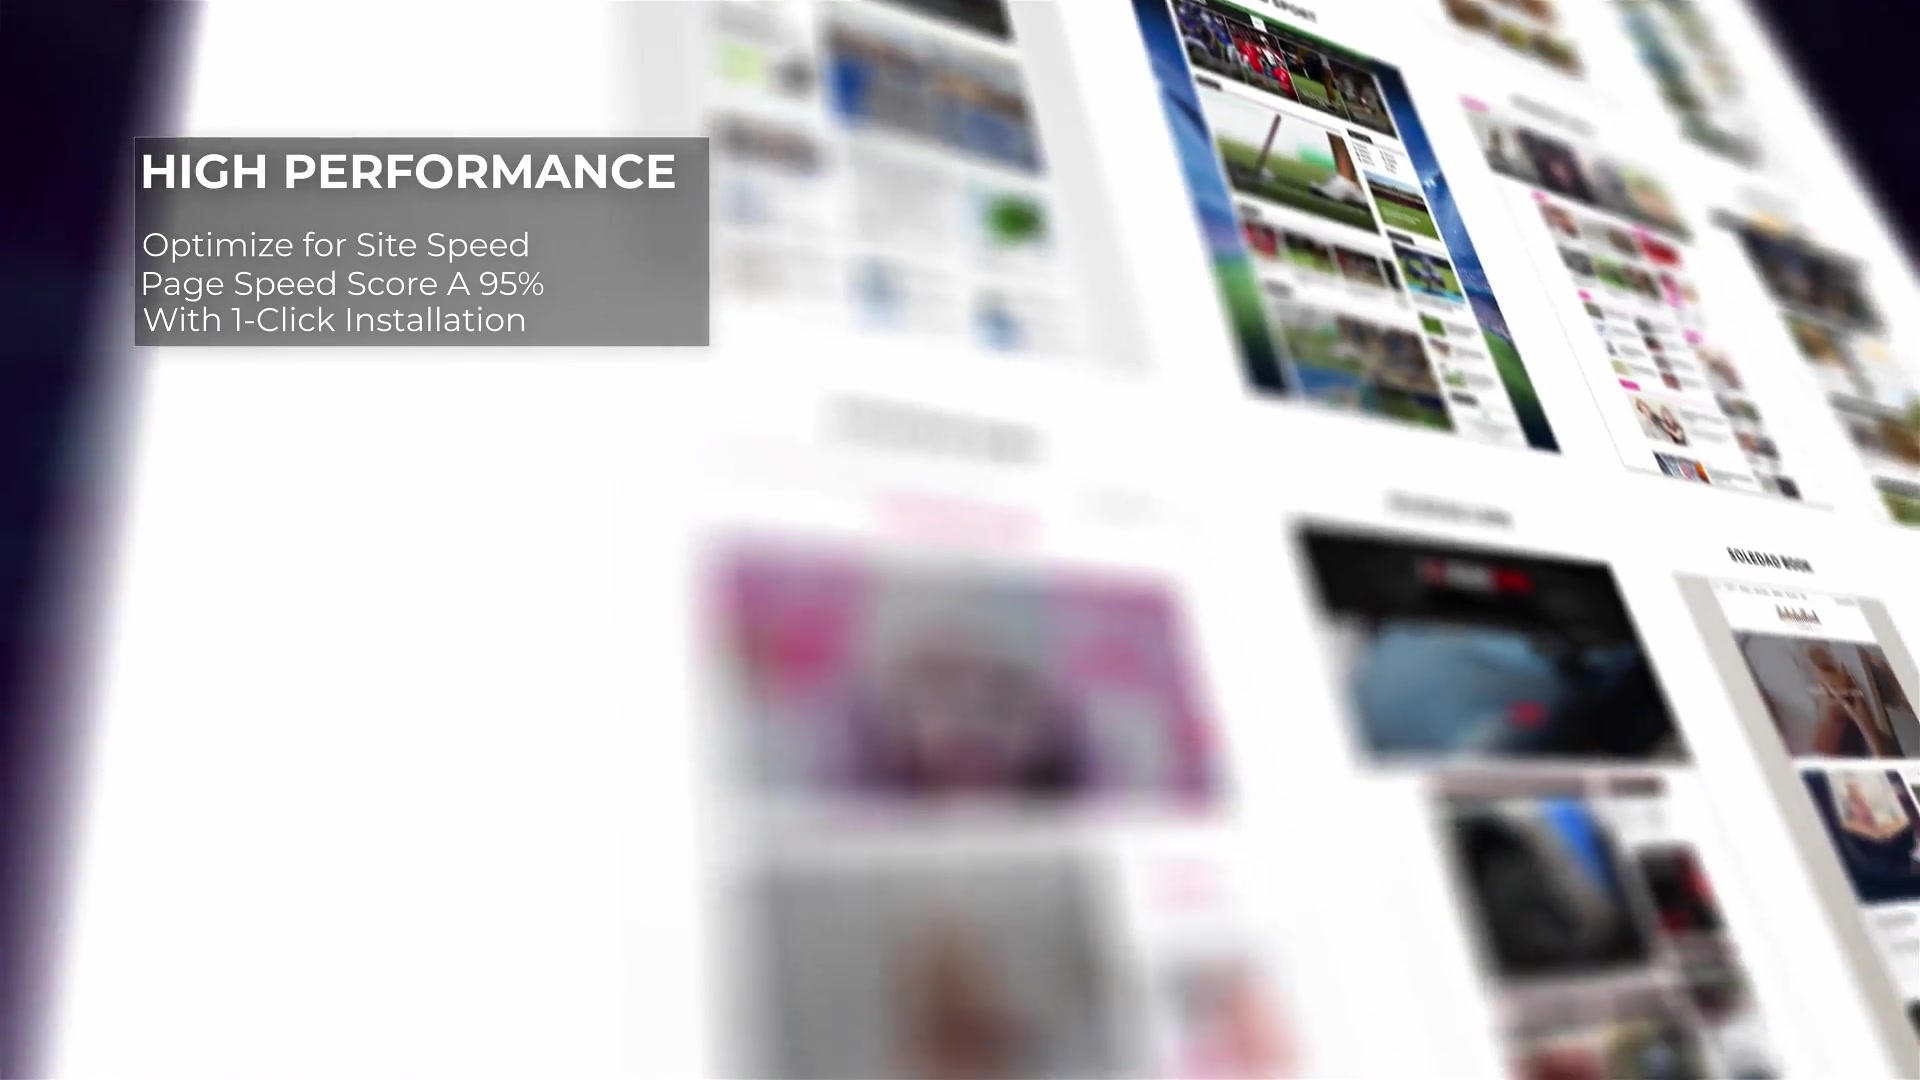 Website Presentation | Premiere Pro Videohive 36270490 Premiere Pro Image 4